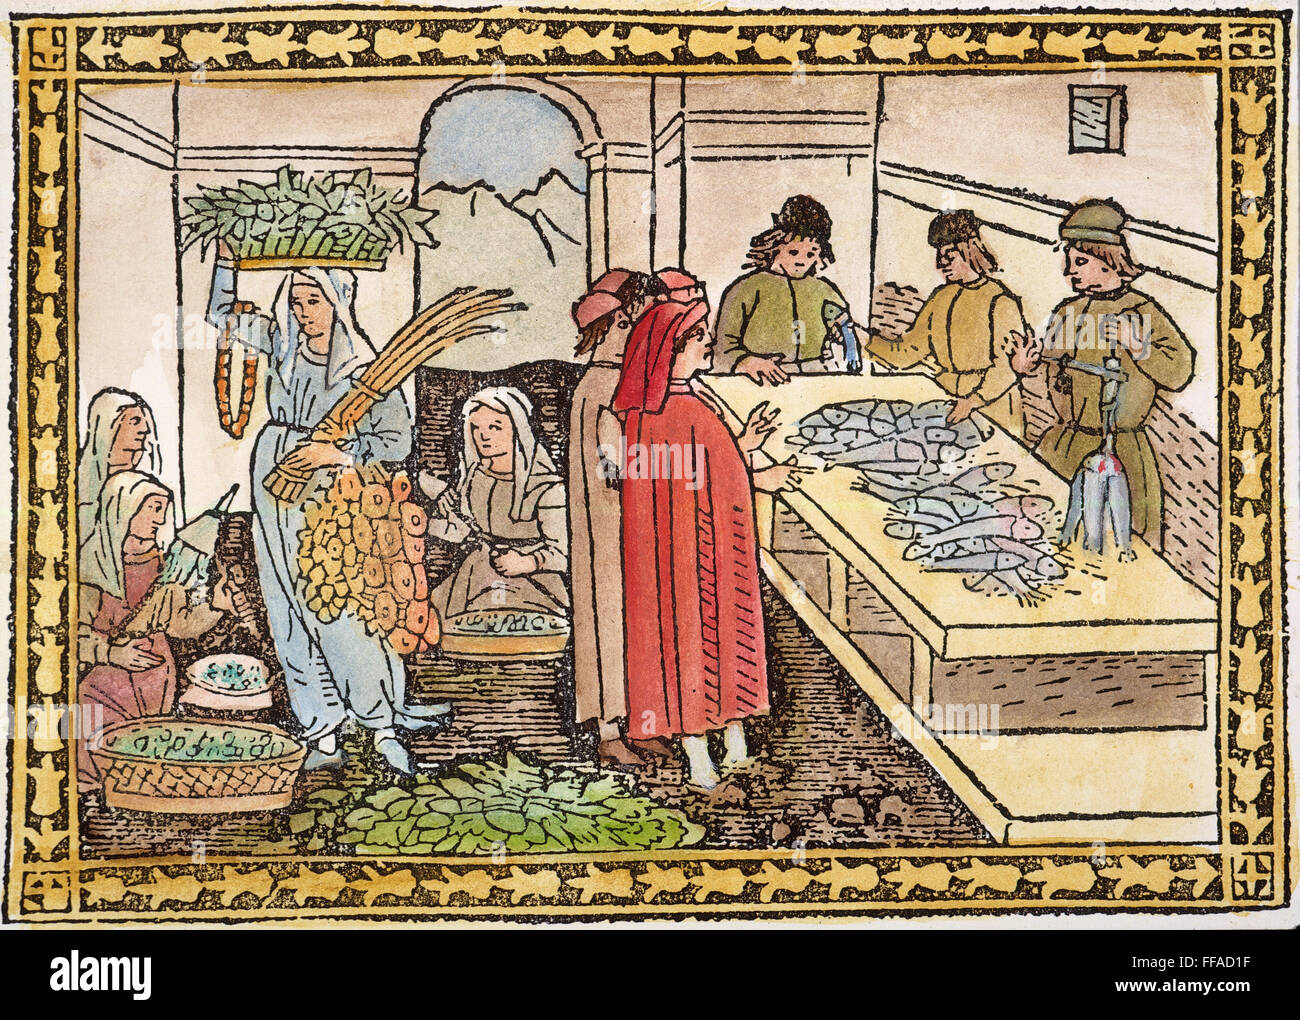 Marché, 15ème siècle. /NA marché à Florence, Italie. Gravure sur bois, l'italien, 15e siècle. Banque D'Images